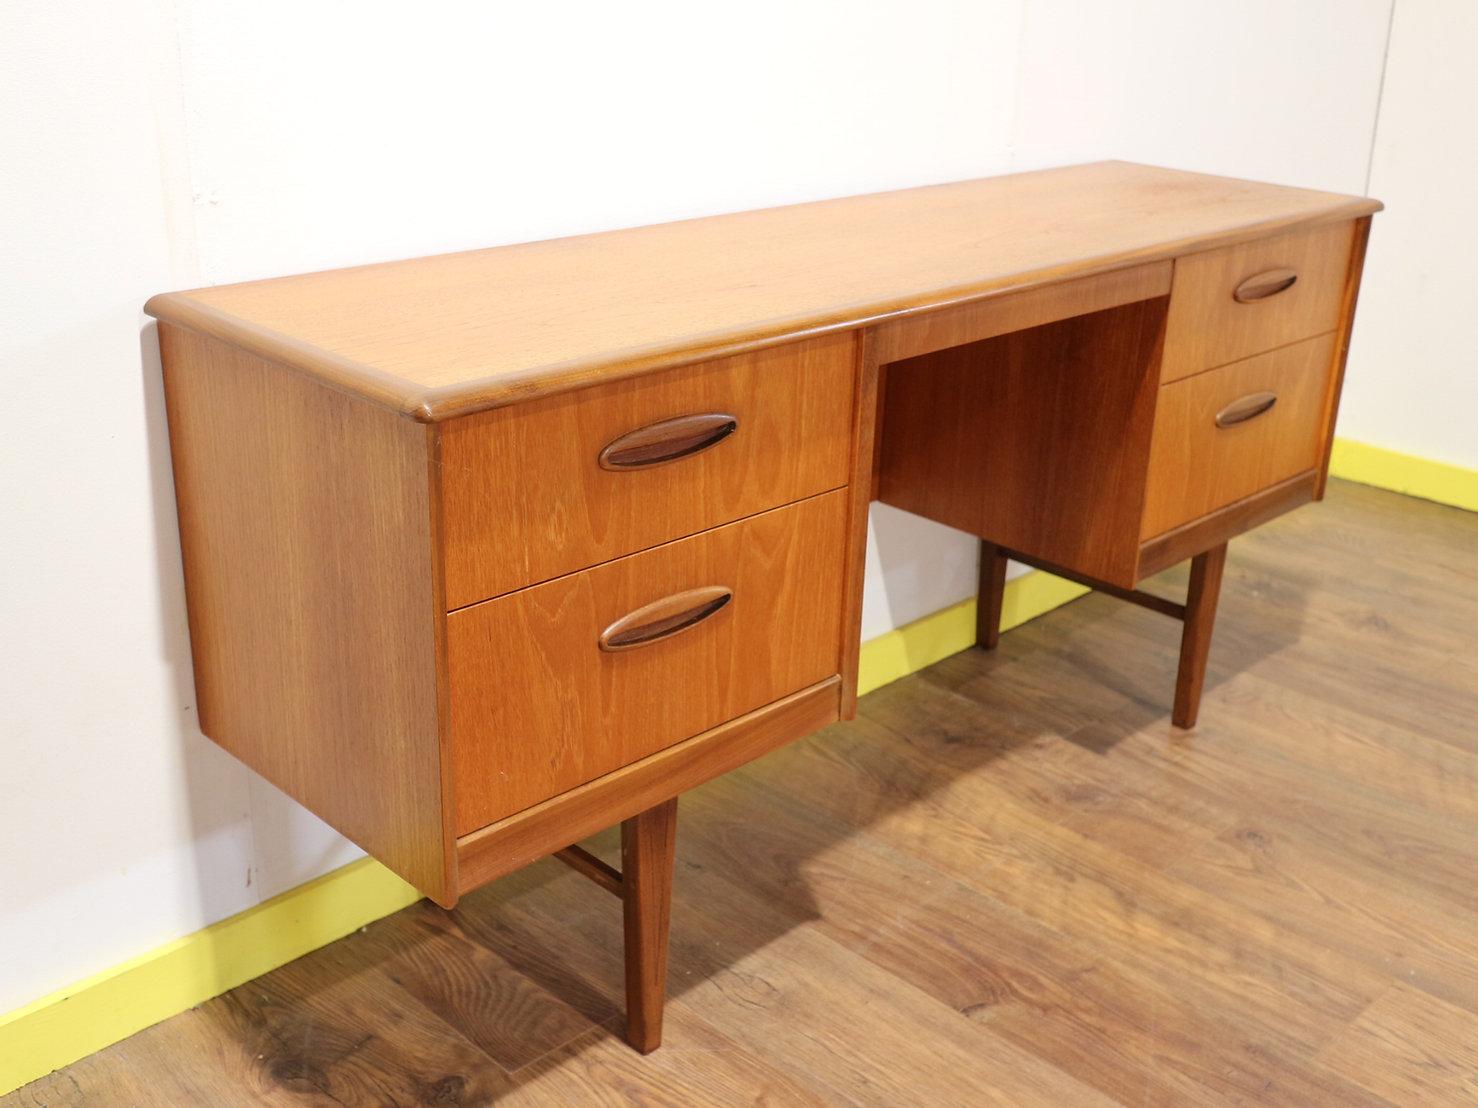 British Mid-Century Modern Vintage Vanity Dresser Desk by Homeworthy